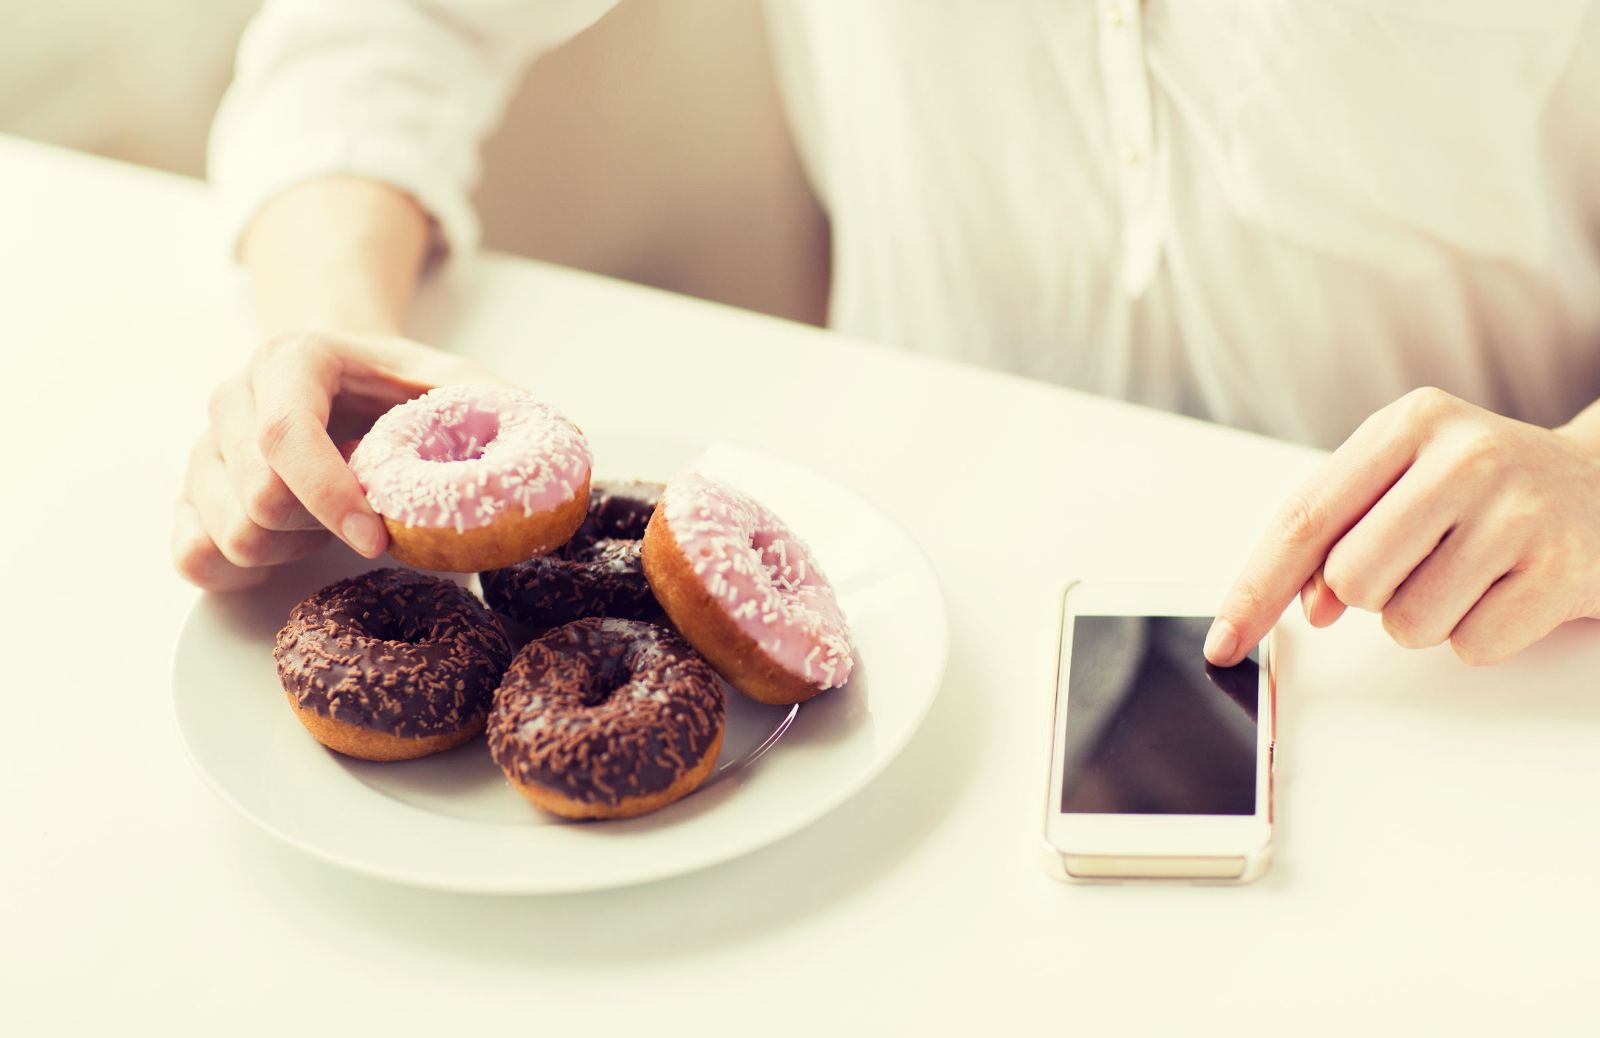 Mangiare con il cellulare sul tavolo fa ingrassare?